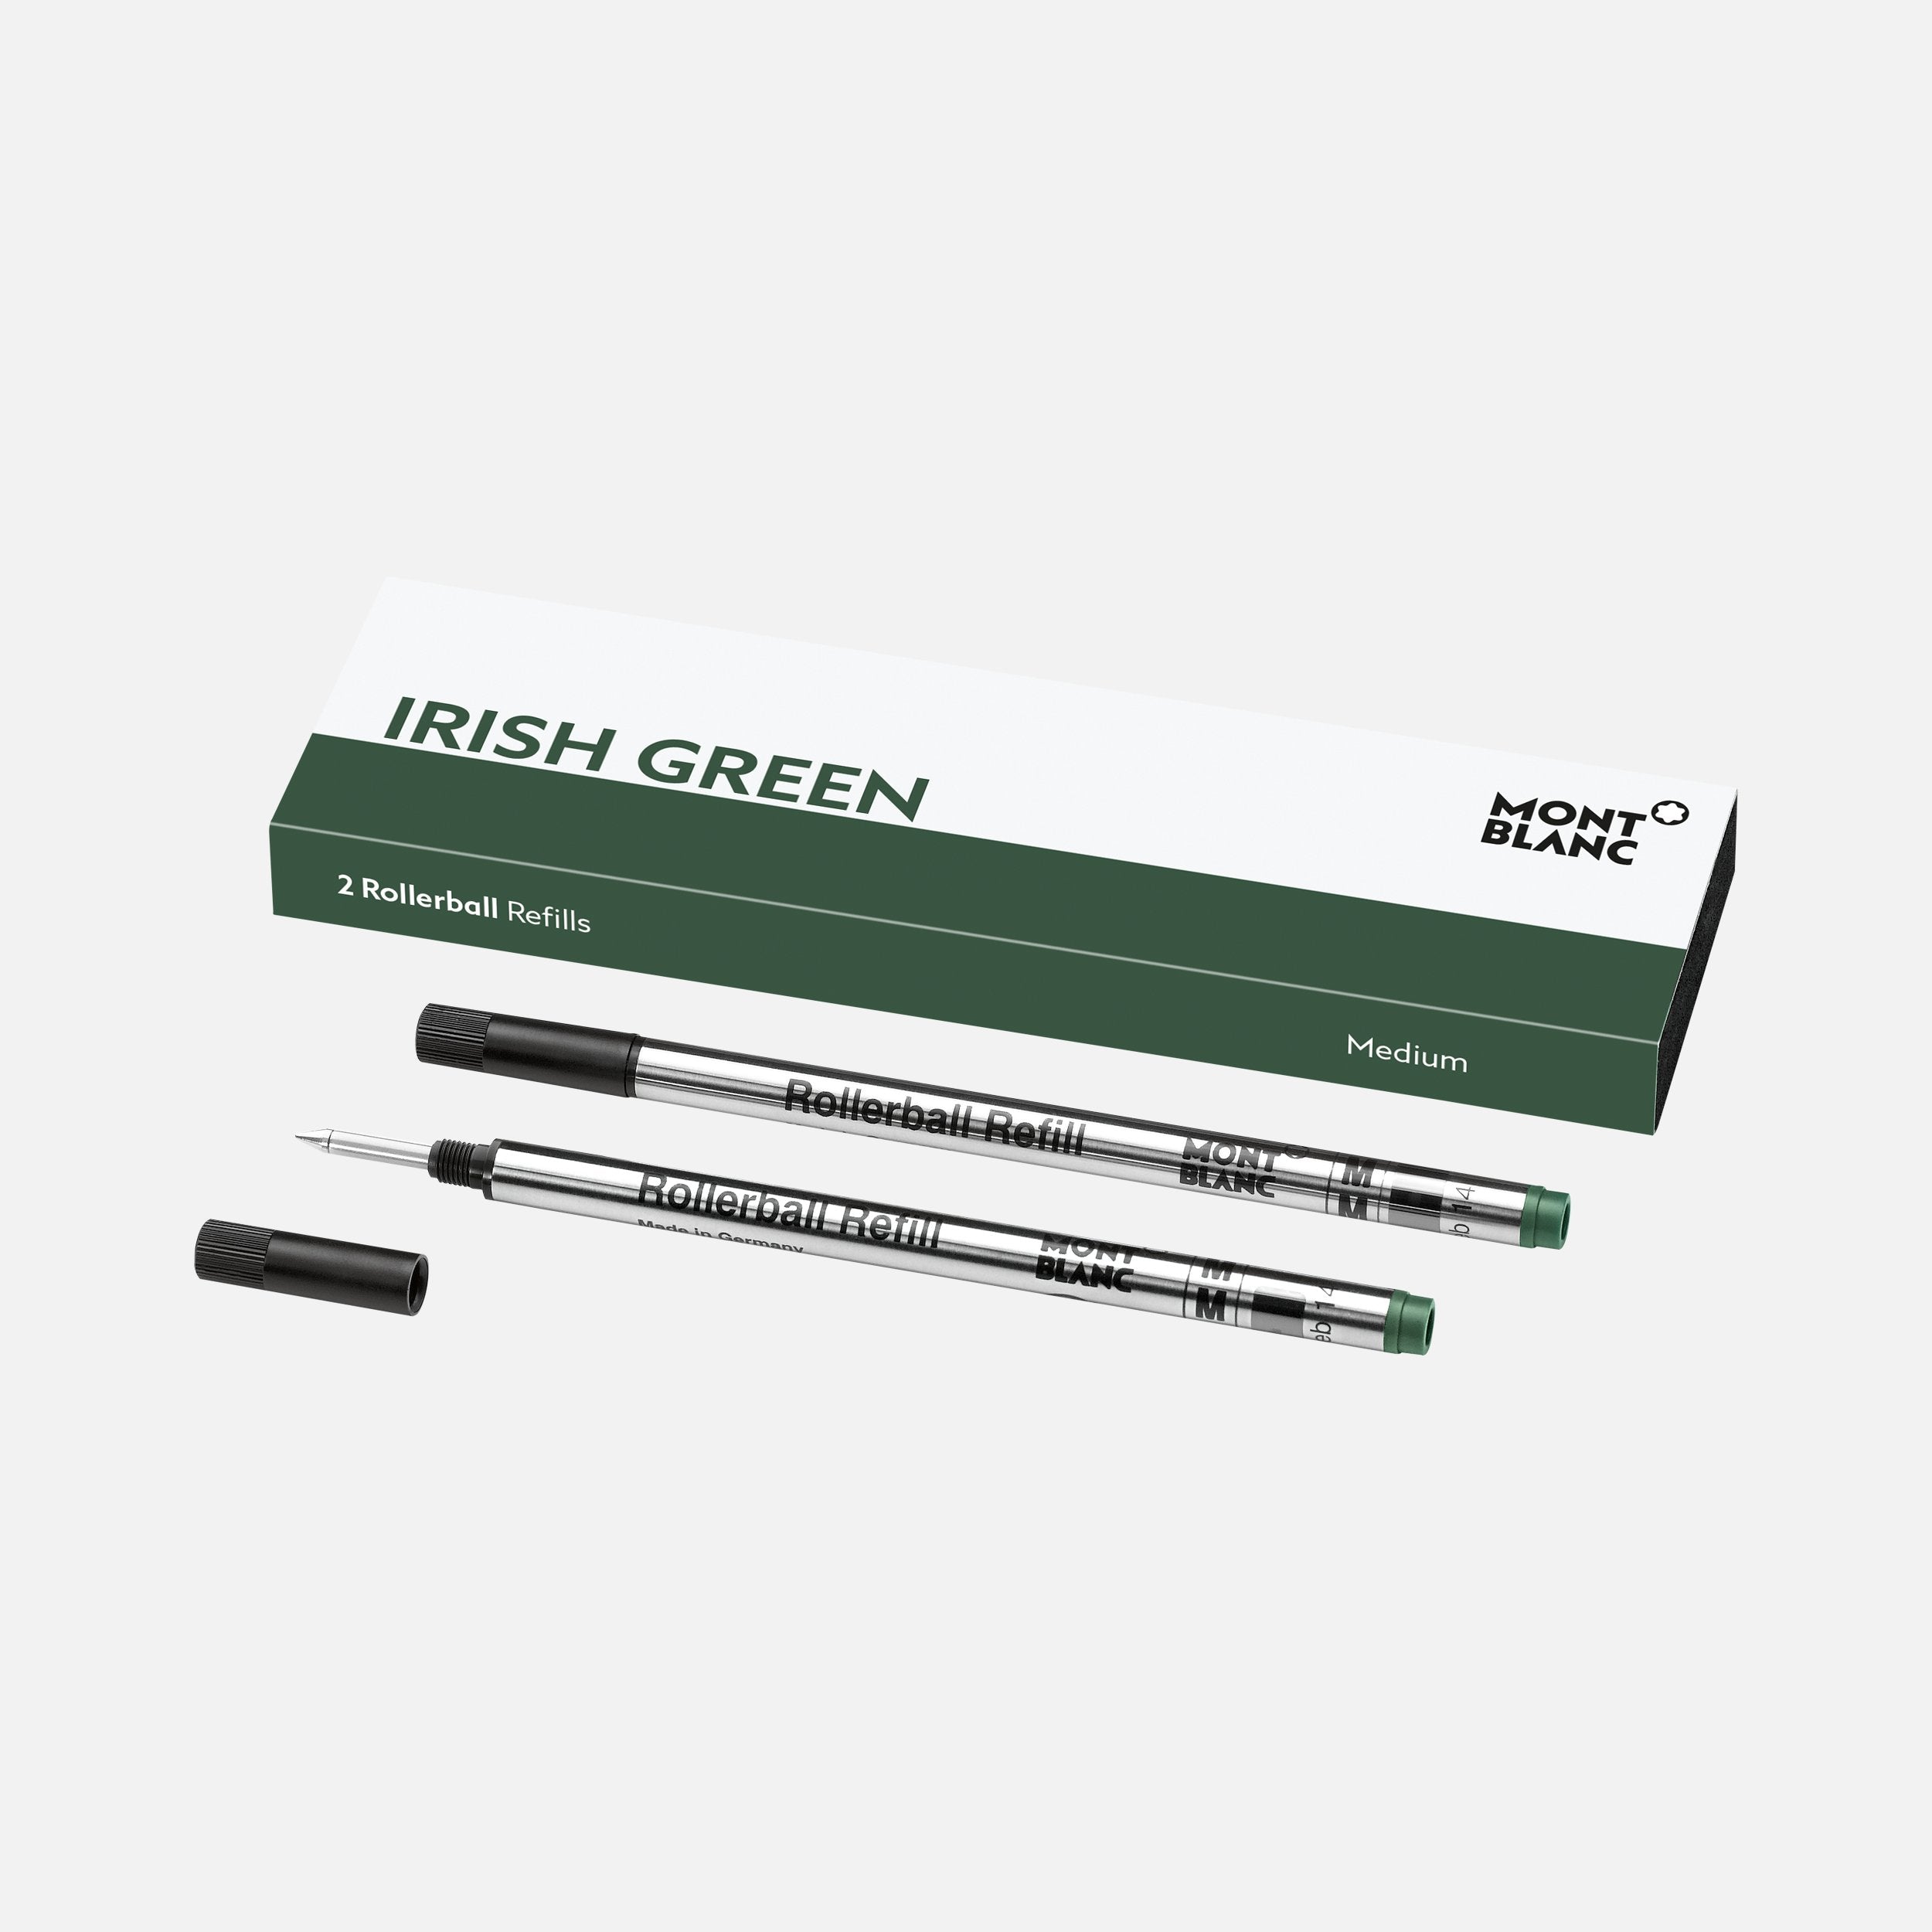 2 ROLLERBALL REFILLS (M), IRISH GREEN-MB124486